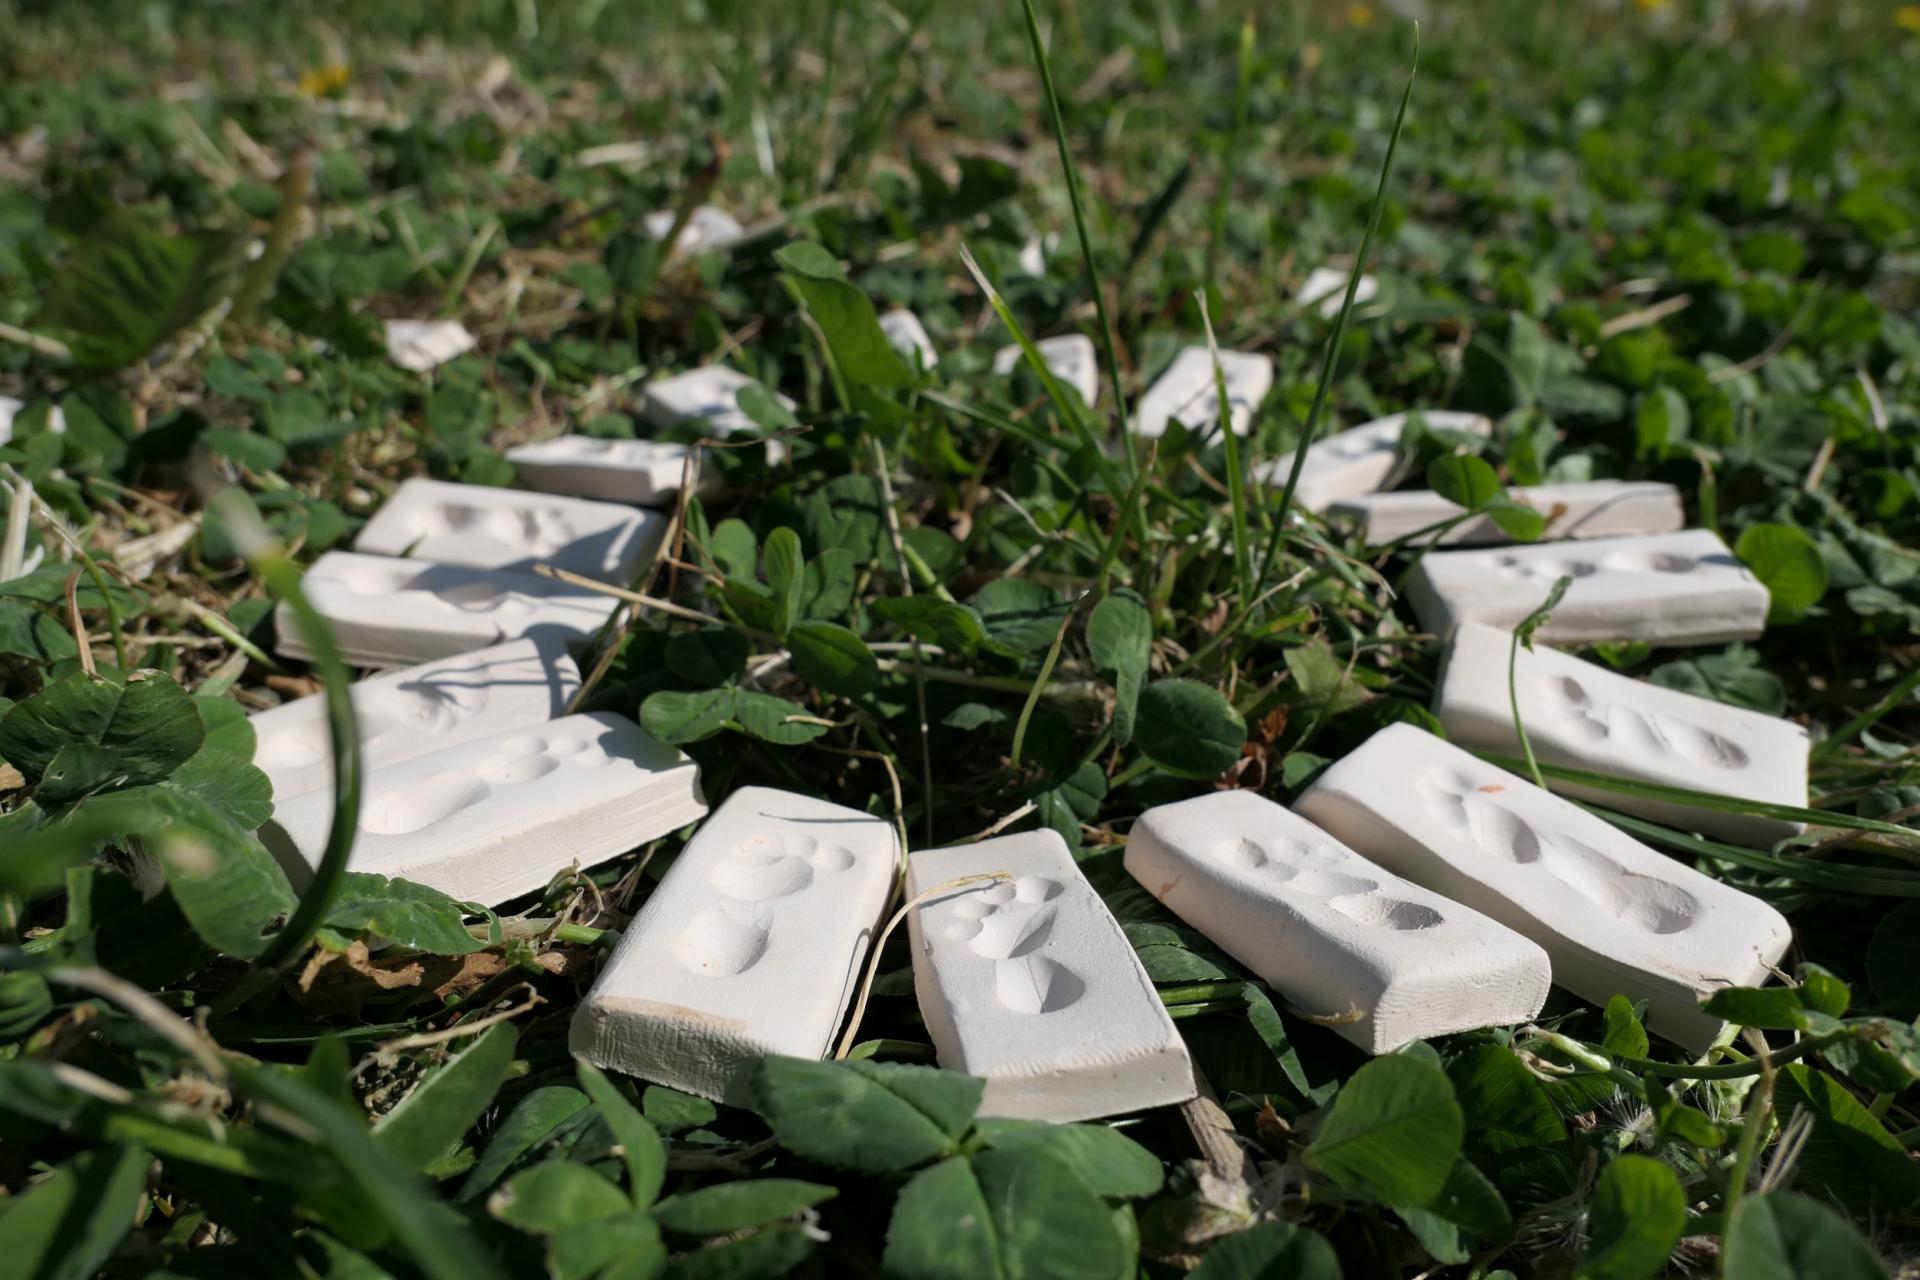 Tegels met voetafdrukken in een cirkel tussen het gras